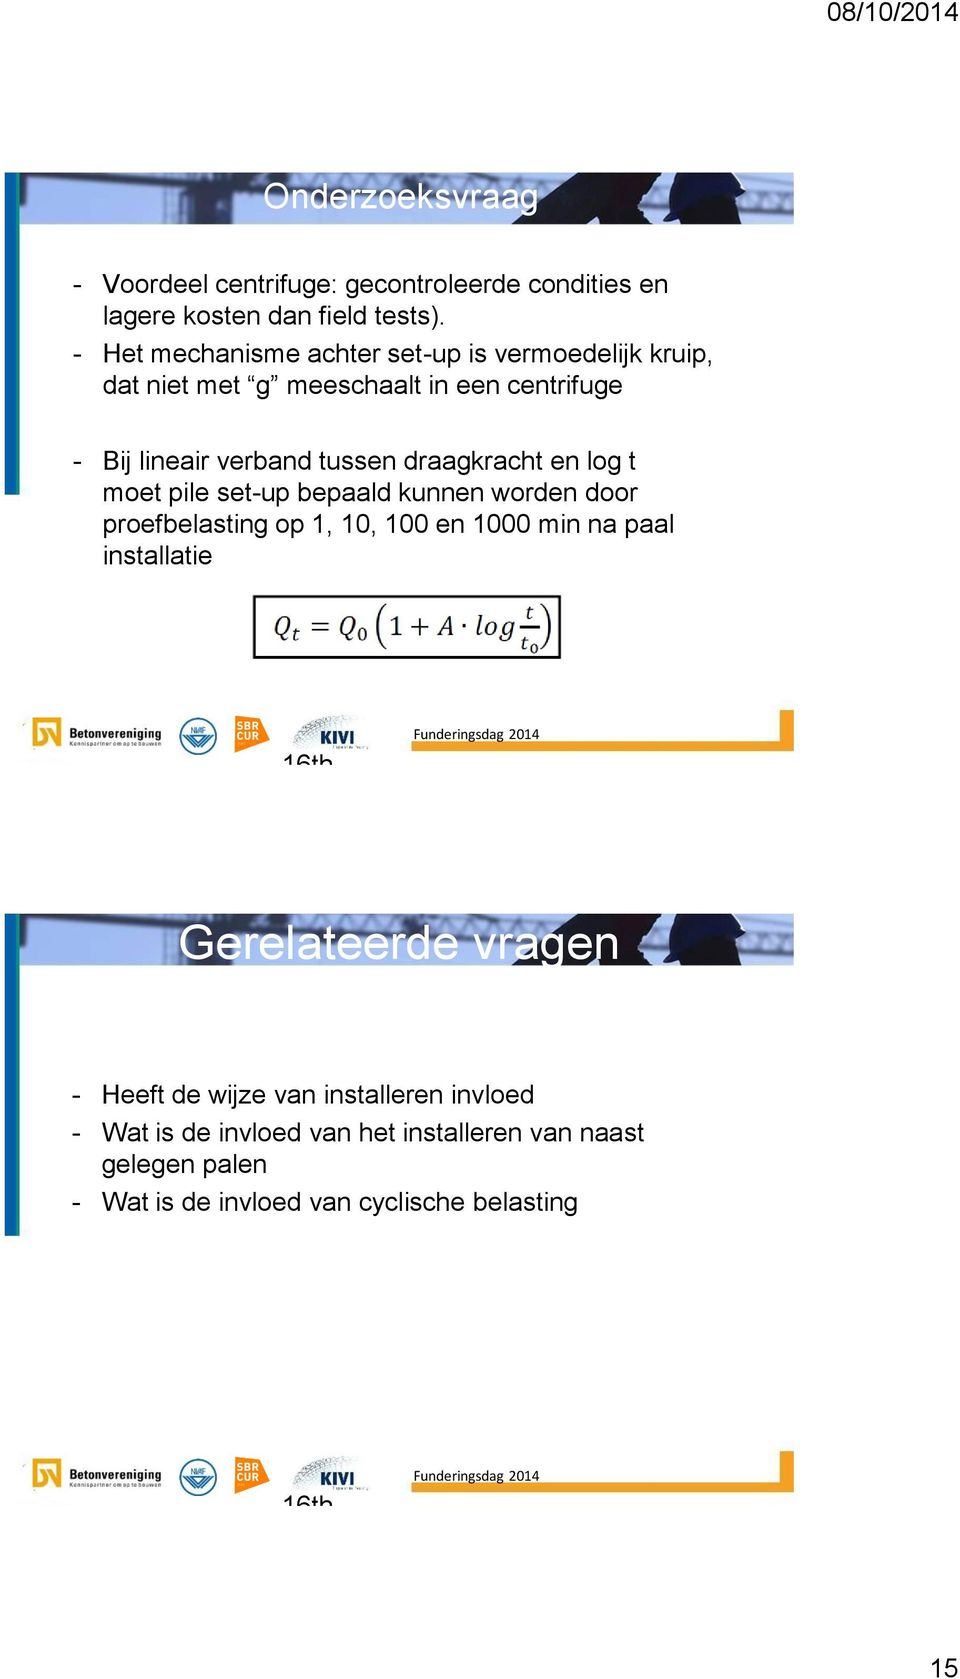 en log t moet pile set-up bepaald kunnen worden door proefbelasting op 1, 10, 100 en 1000 min na paal installatie 16th January 2014